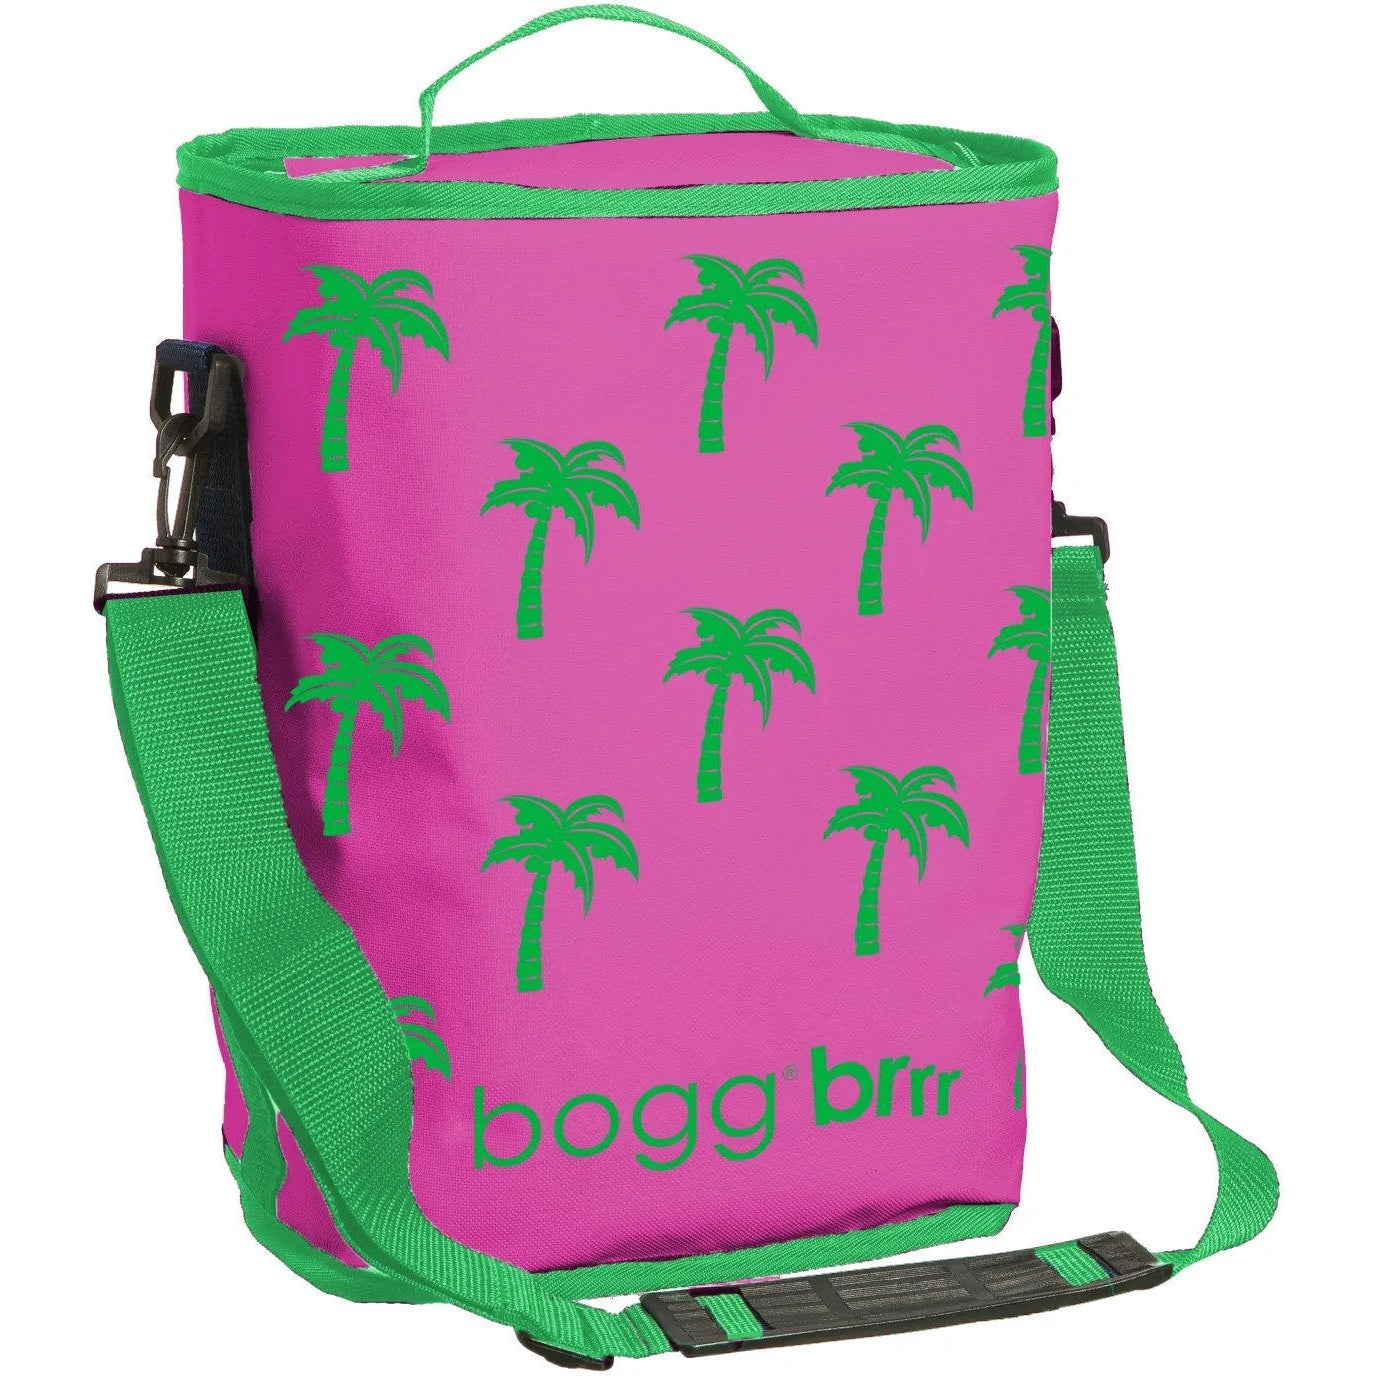 Baby Bogg Bag Printed Tote - Pants Store